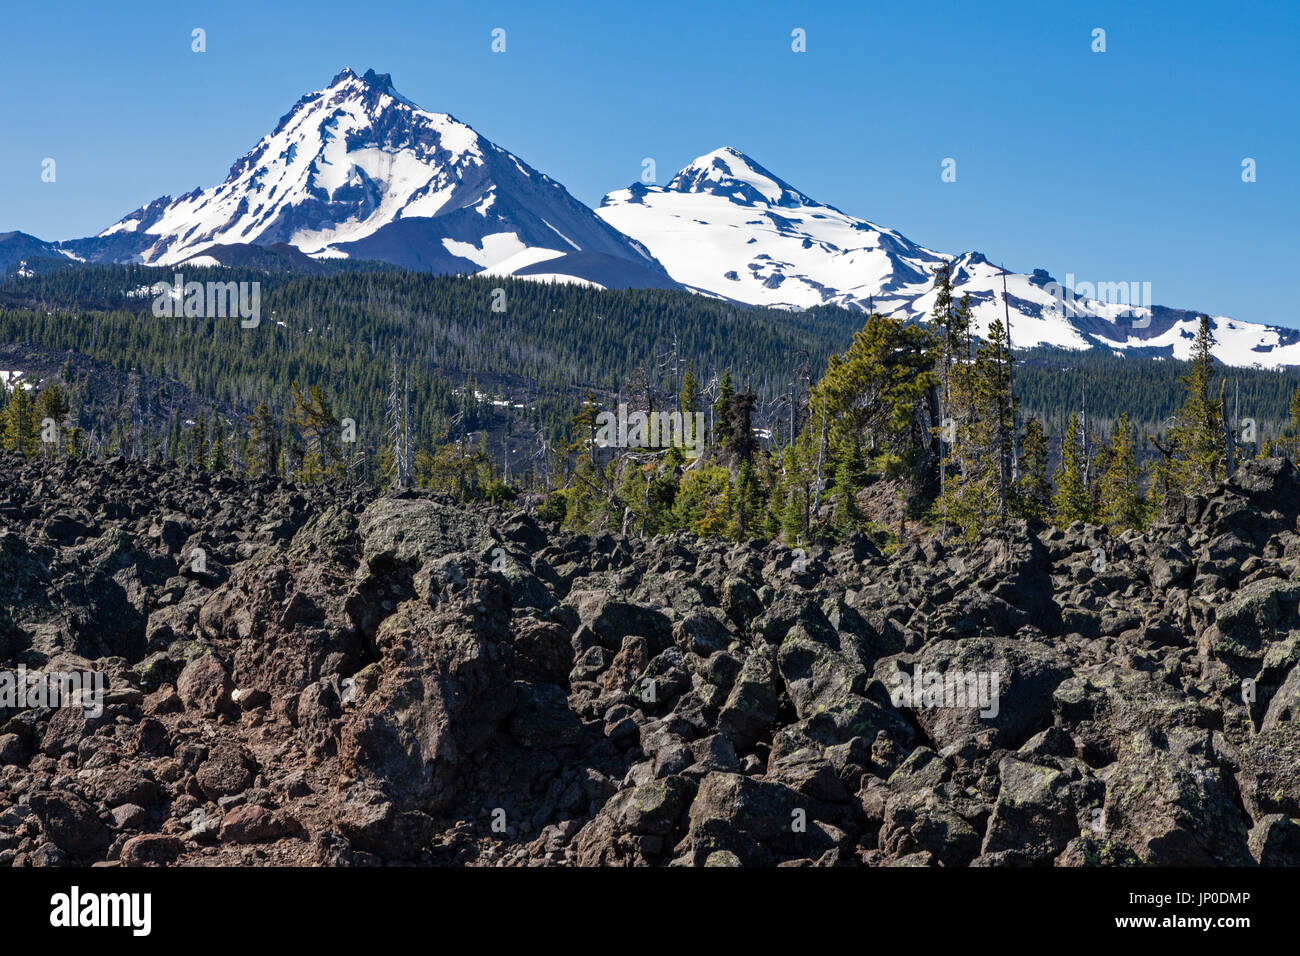 Drei Schwestern sind ein komplexer Vulkan von drei vulkanischen Gipfeln der Kaskade-vulkanischer Bogen und der Kaskadenkette in Oregon. Stockfoto